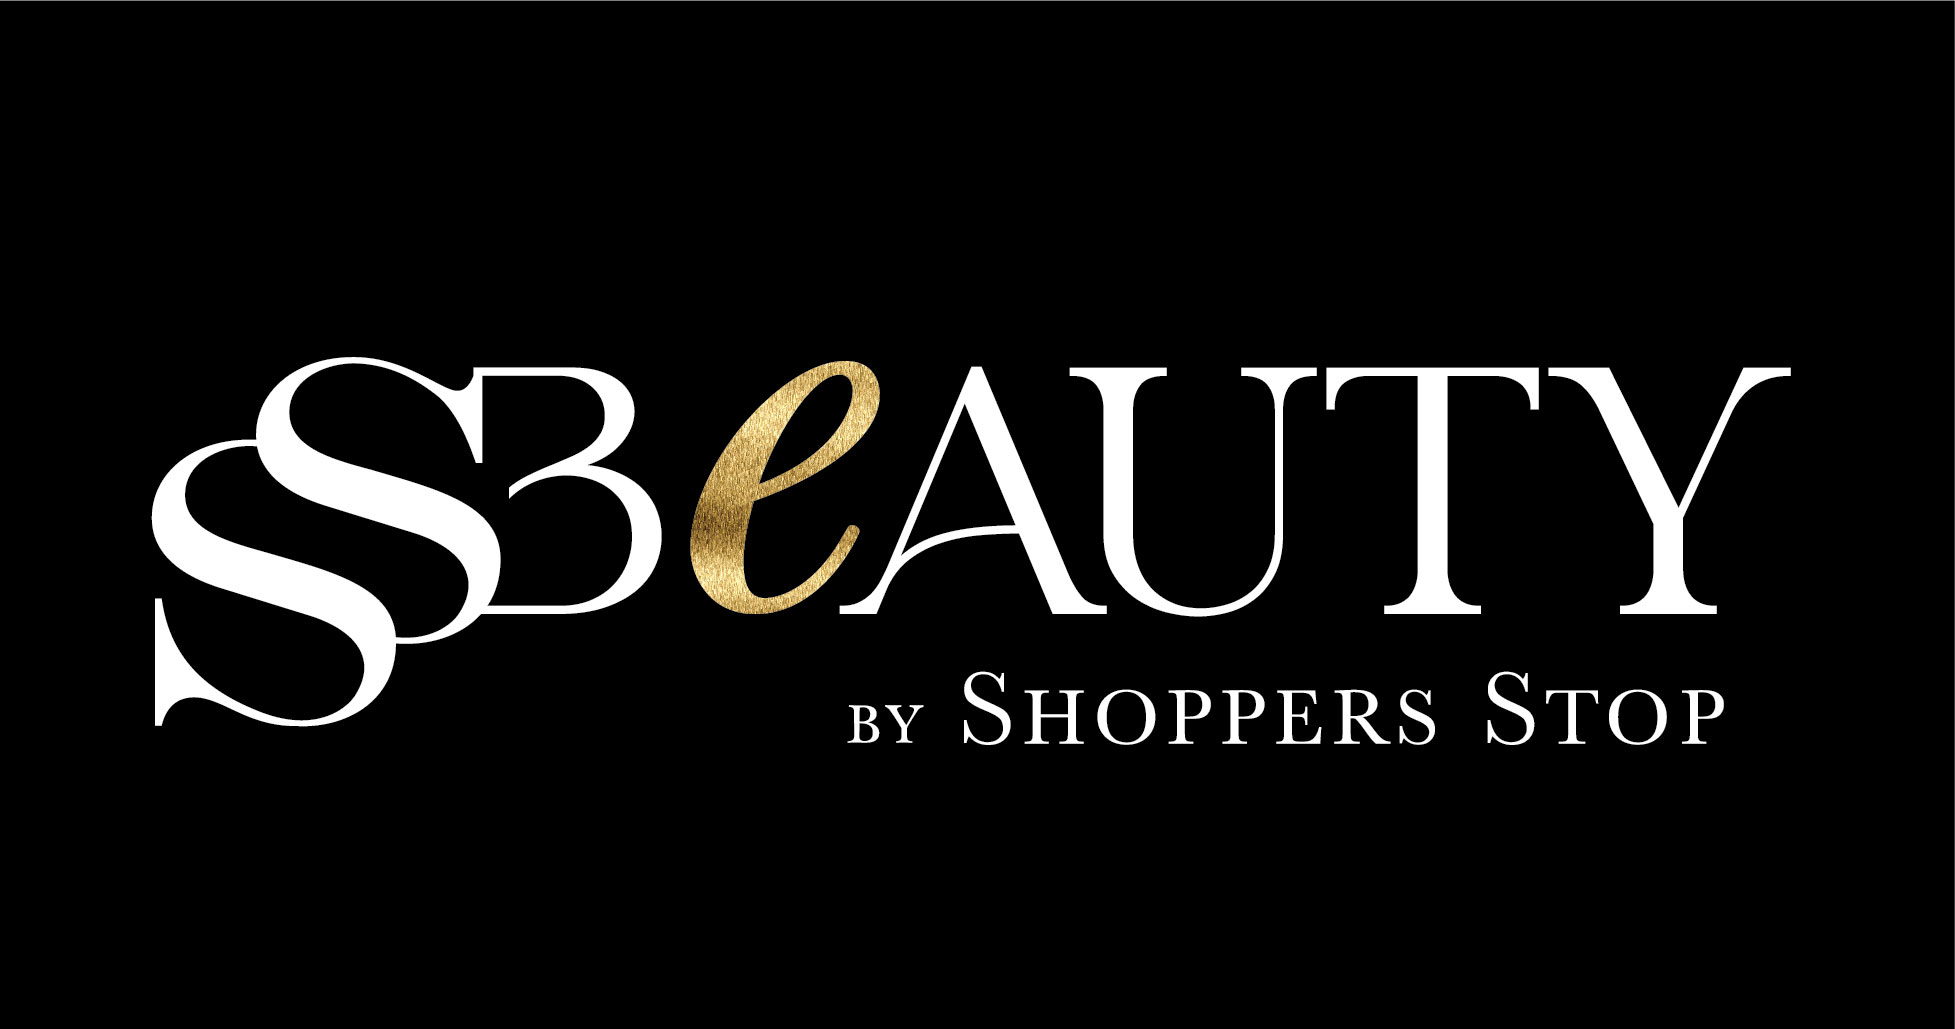 SS Beauty by Shopper Stop, Malad - Health, Beauty, Salon & Spa - Infiniti  Mall - Shopping Mall in Mumbai